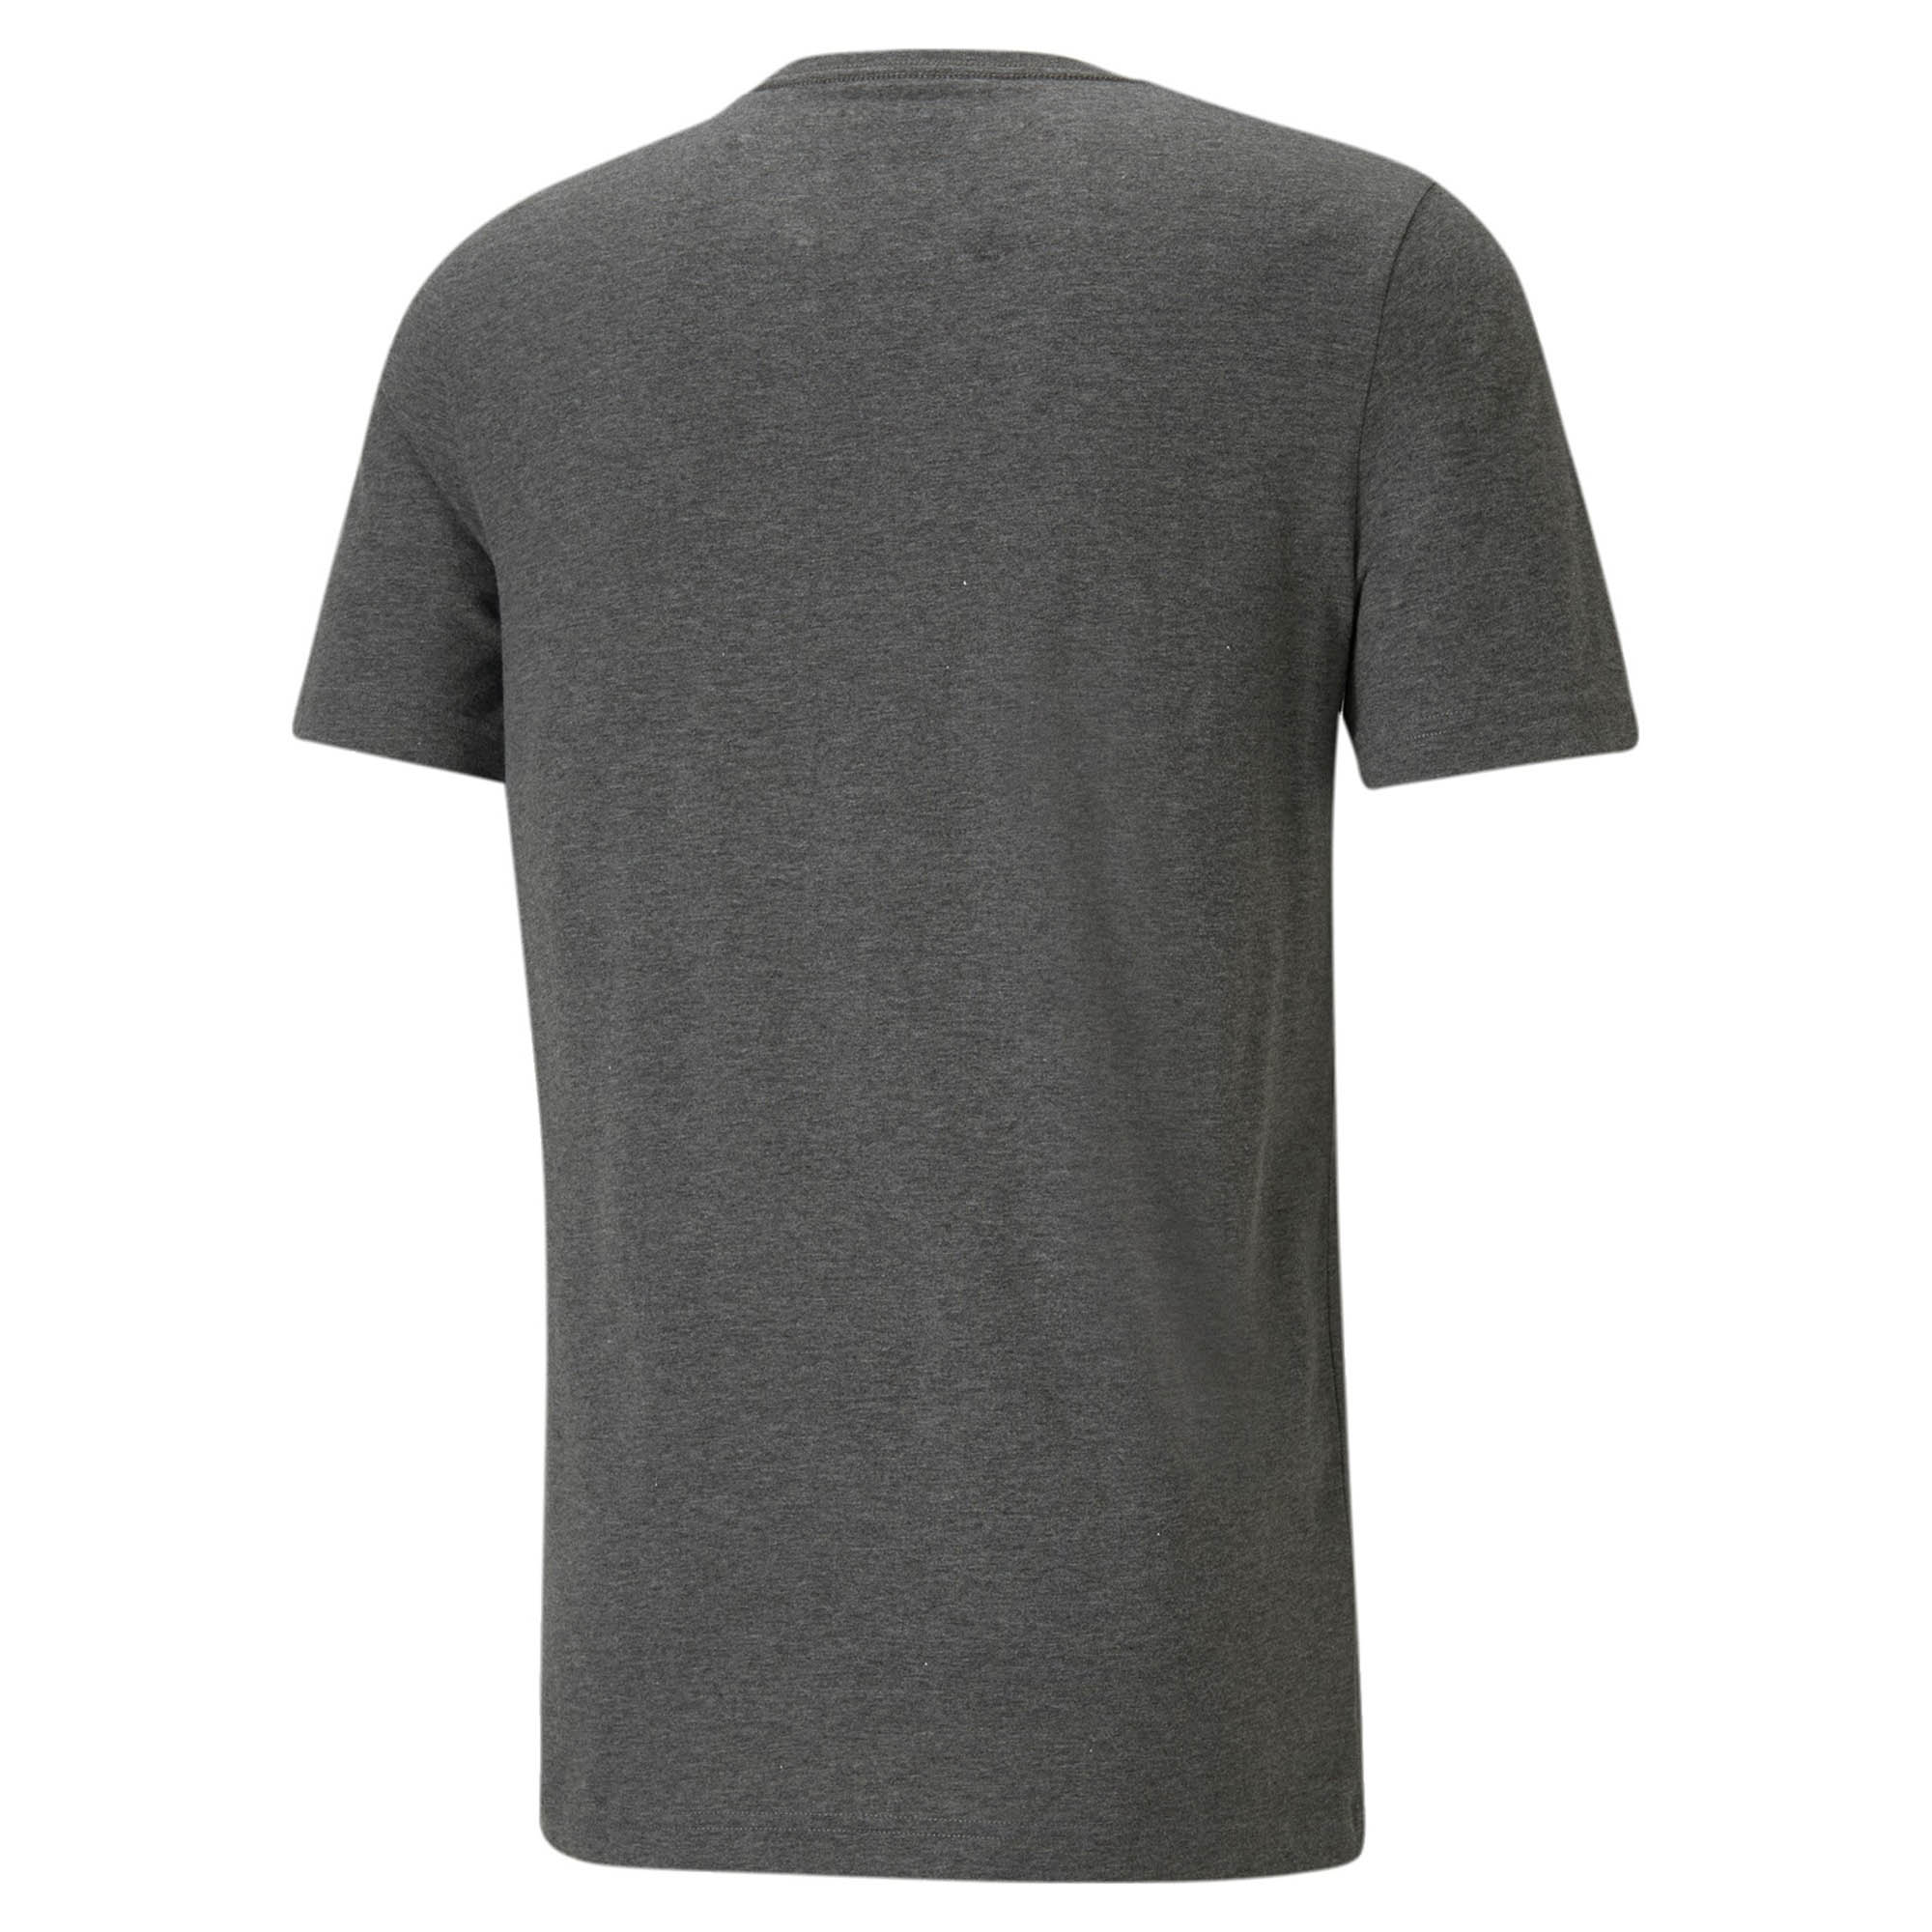 PUMA Herren ESS Heather Tee T-Shirt Übergröße grau 586736 01 bis 6XL